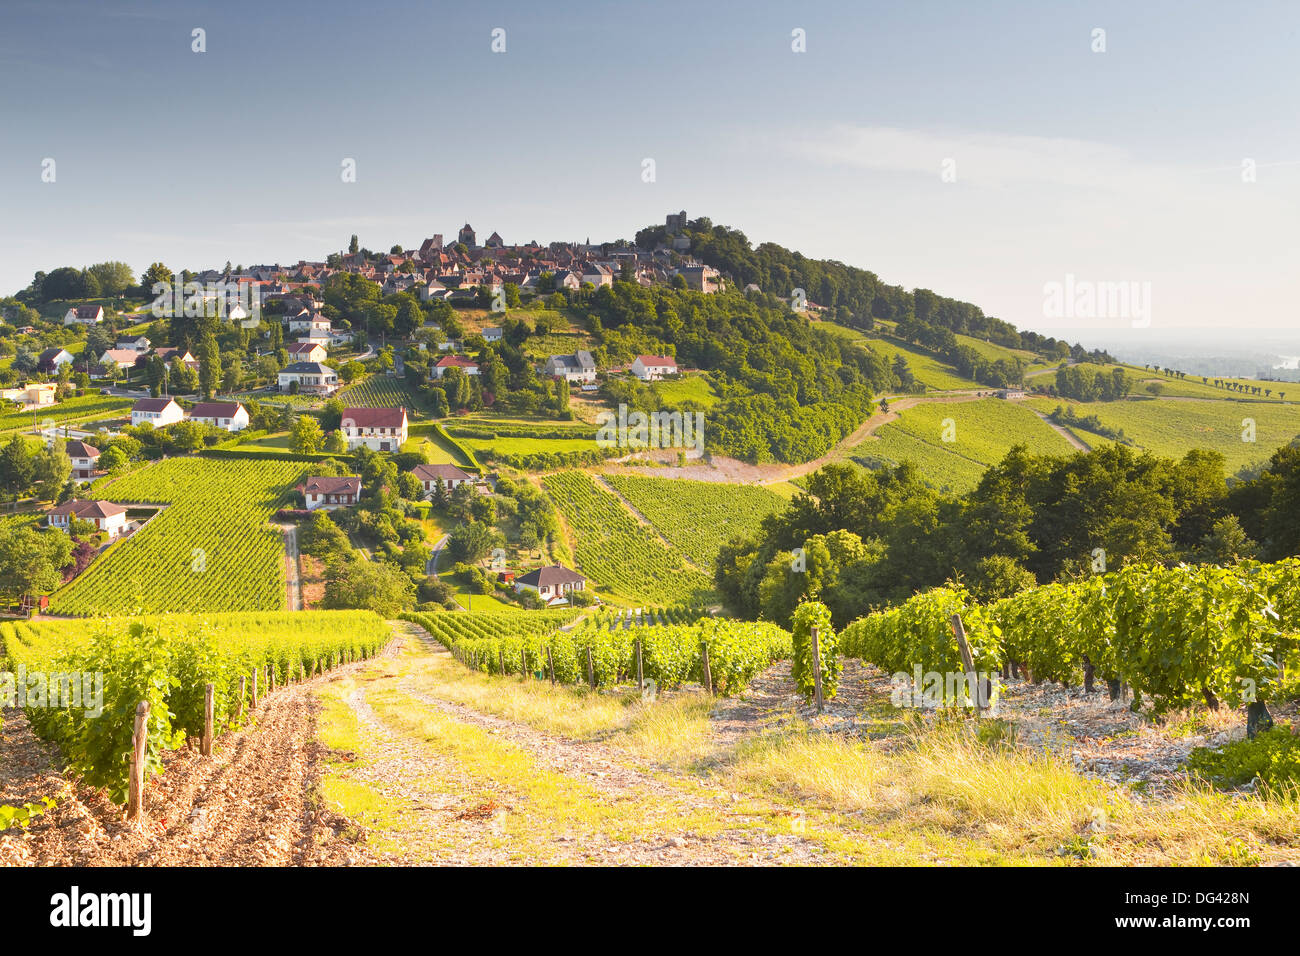 Le vignoble de Sancerre dans la vallée de la Loire, Cher, Centre, France, Europe Banque D'Images